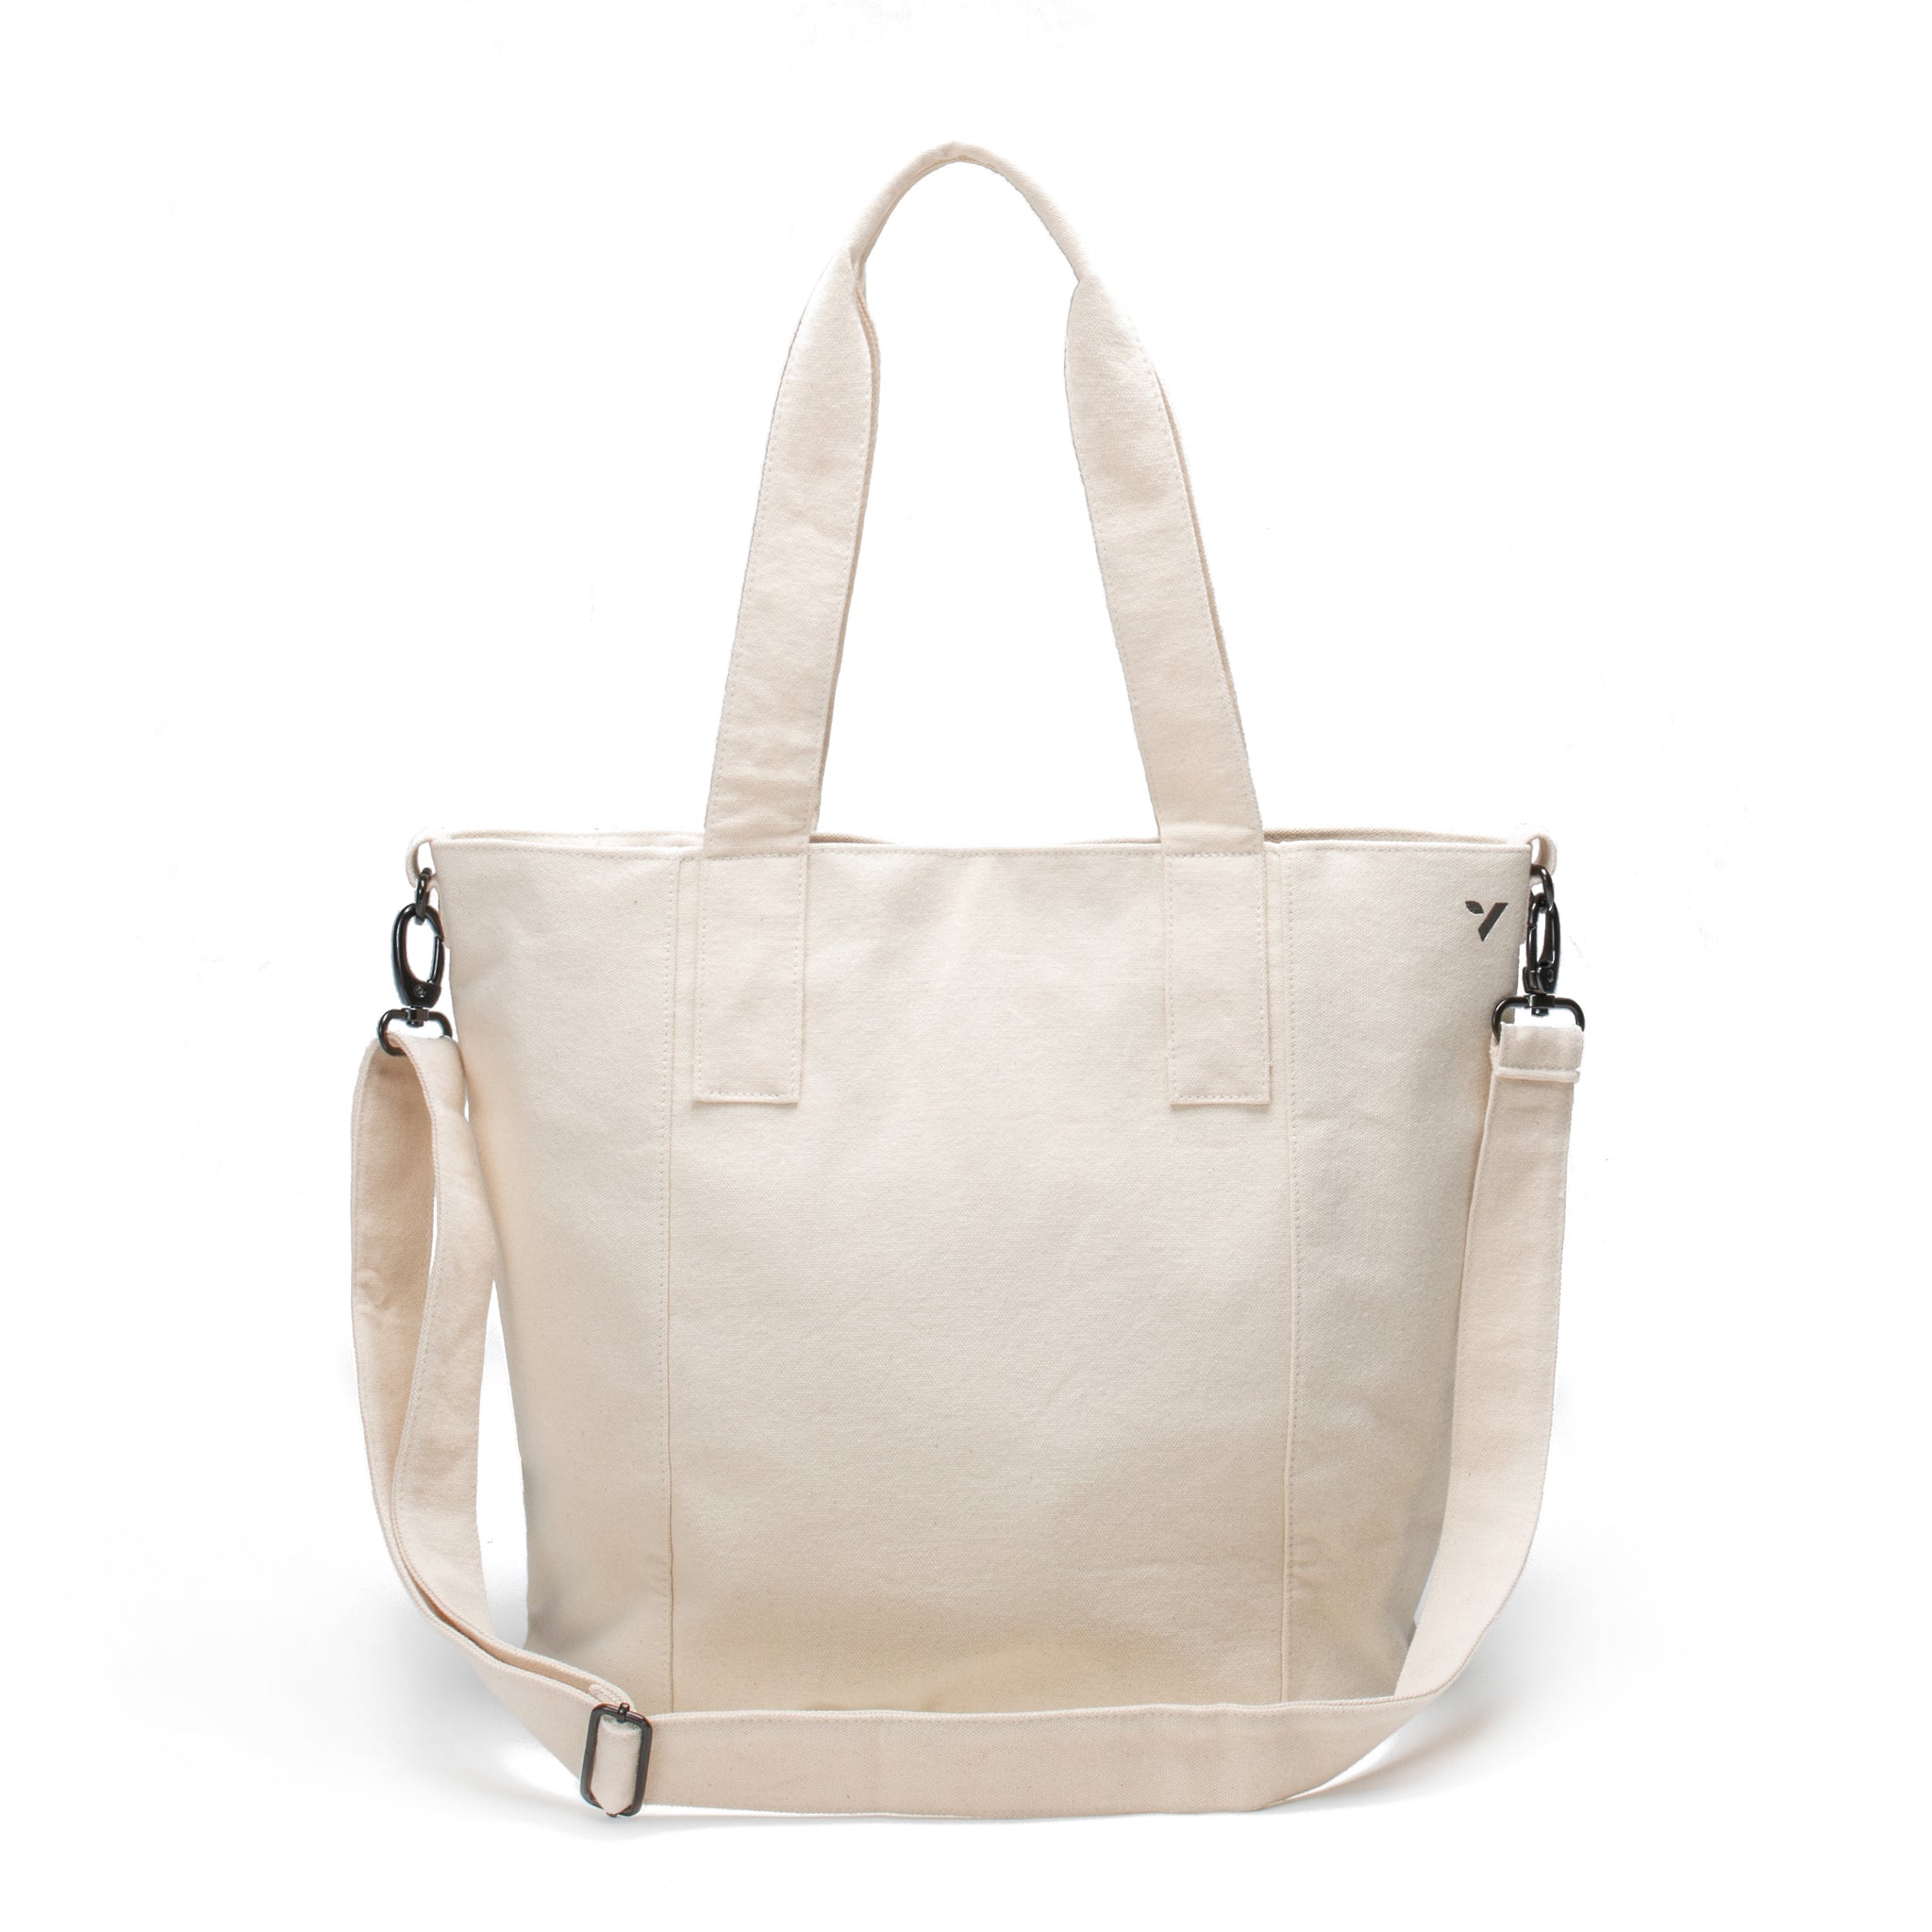 Vooray Zoey Tote - 52 cm - 22L - Sporttasche oder Reisehandtasche -Hergestellt mit Bio-Baumwolle